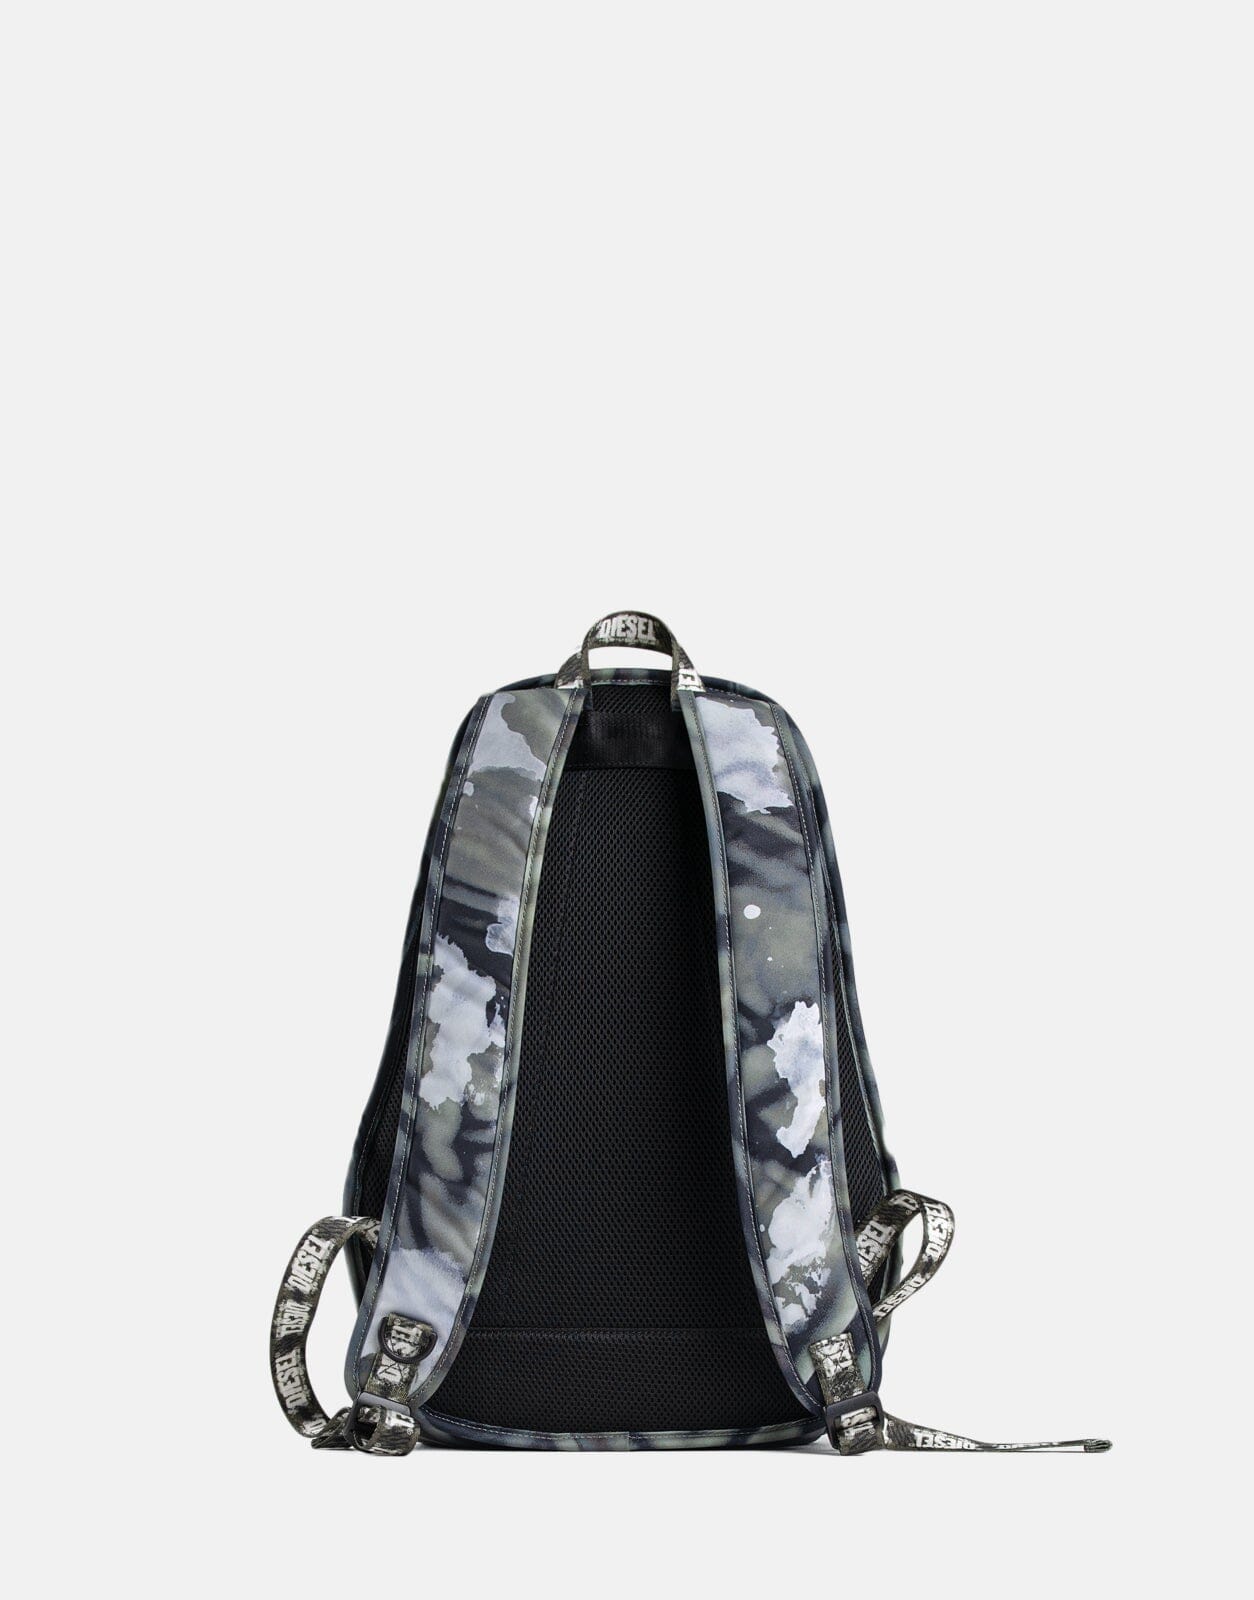 Diesel Rave Backpack - Subwear